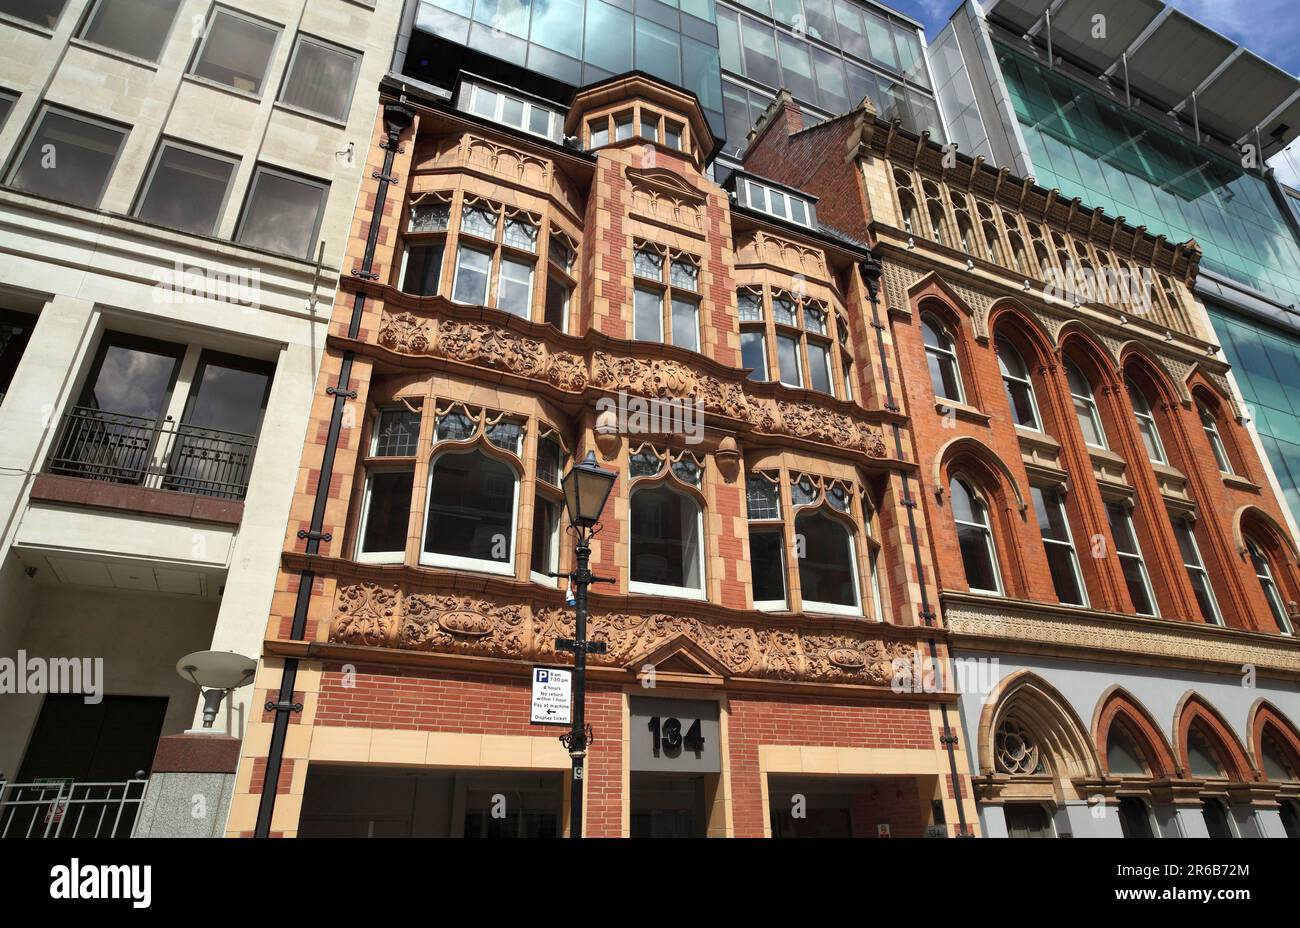 Façades de bâtiments anciennes entourées d'architecture moderne sur la rue Edmund au centre de Birmingham. Banque D'Images